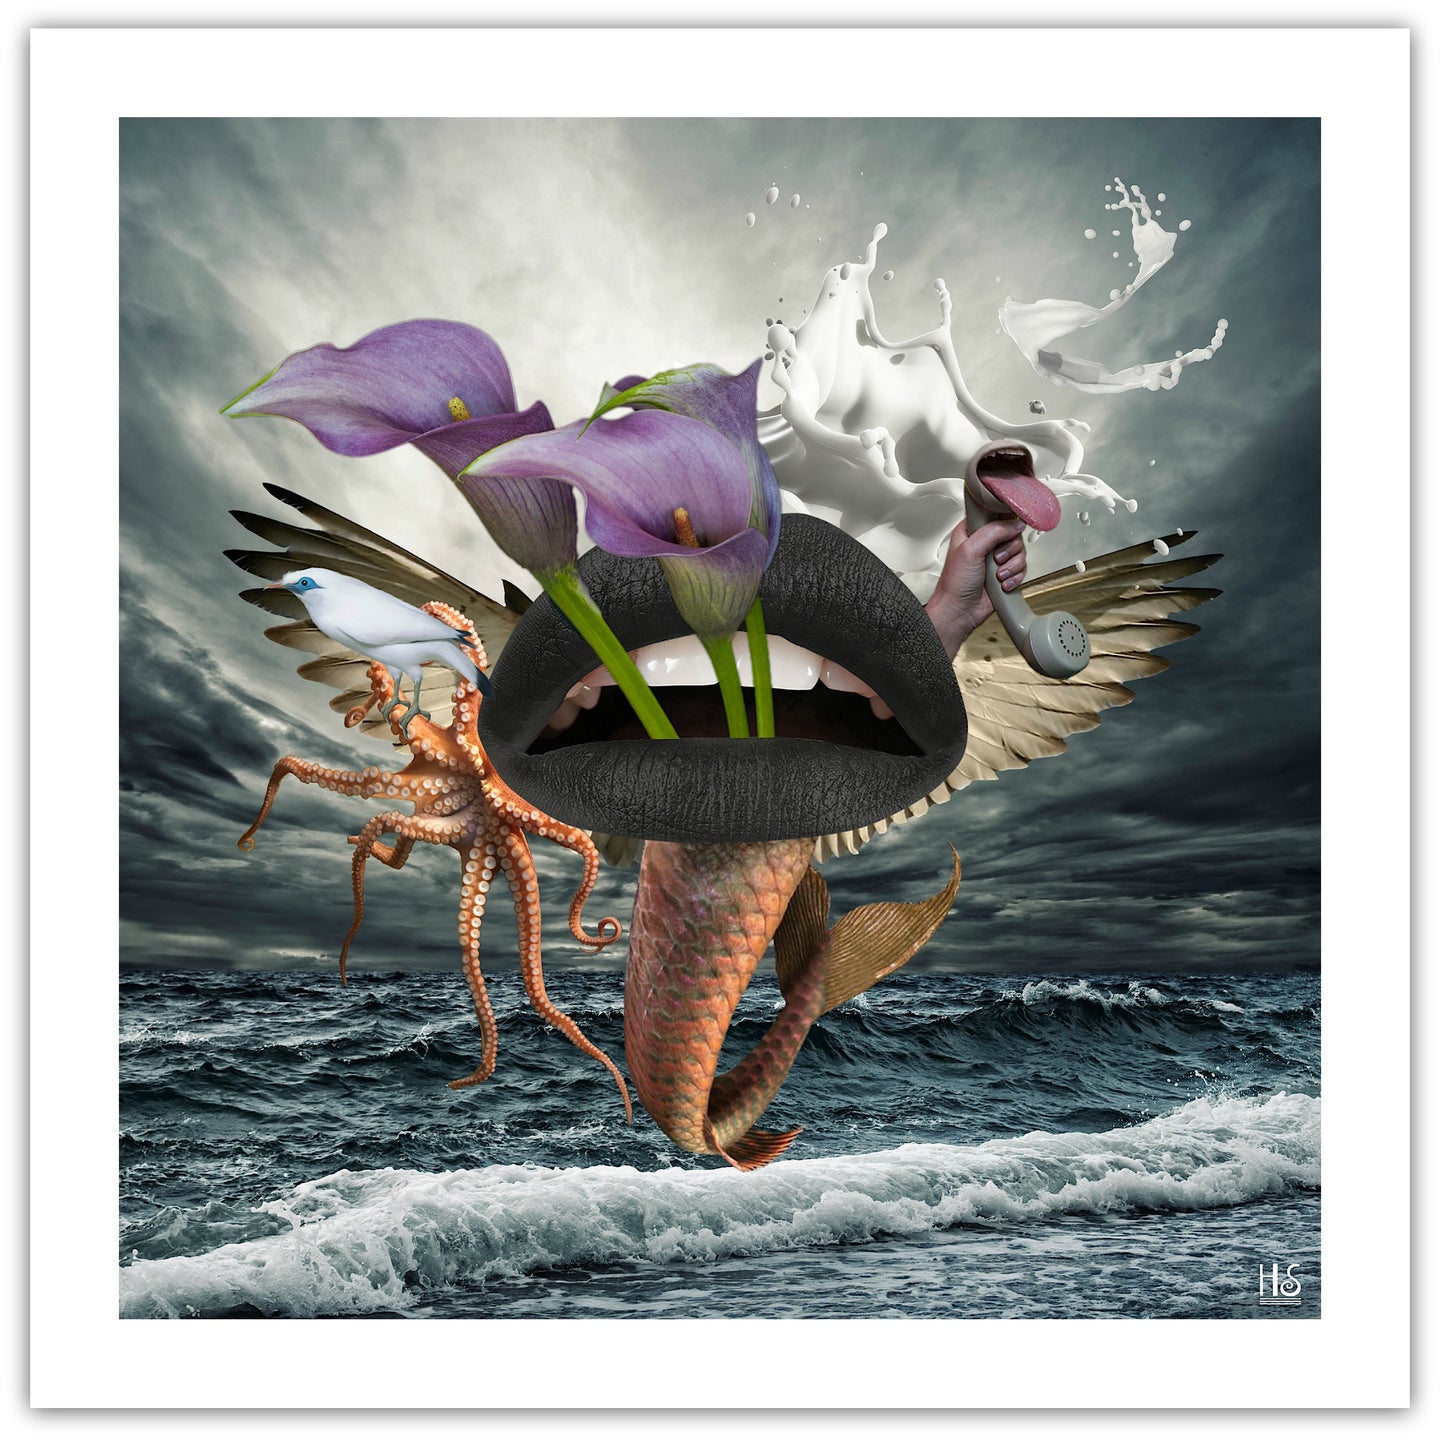 Behind and Beyond - original surrealistisk kunst, der med et truende hav i baggrunden viser et mix af bl.a. sort mund med bloster, vinger fugl og blæksprutte - af billedkunstner og surrealist Hugo Sax